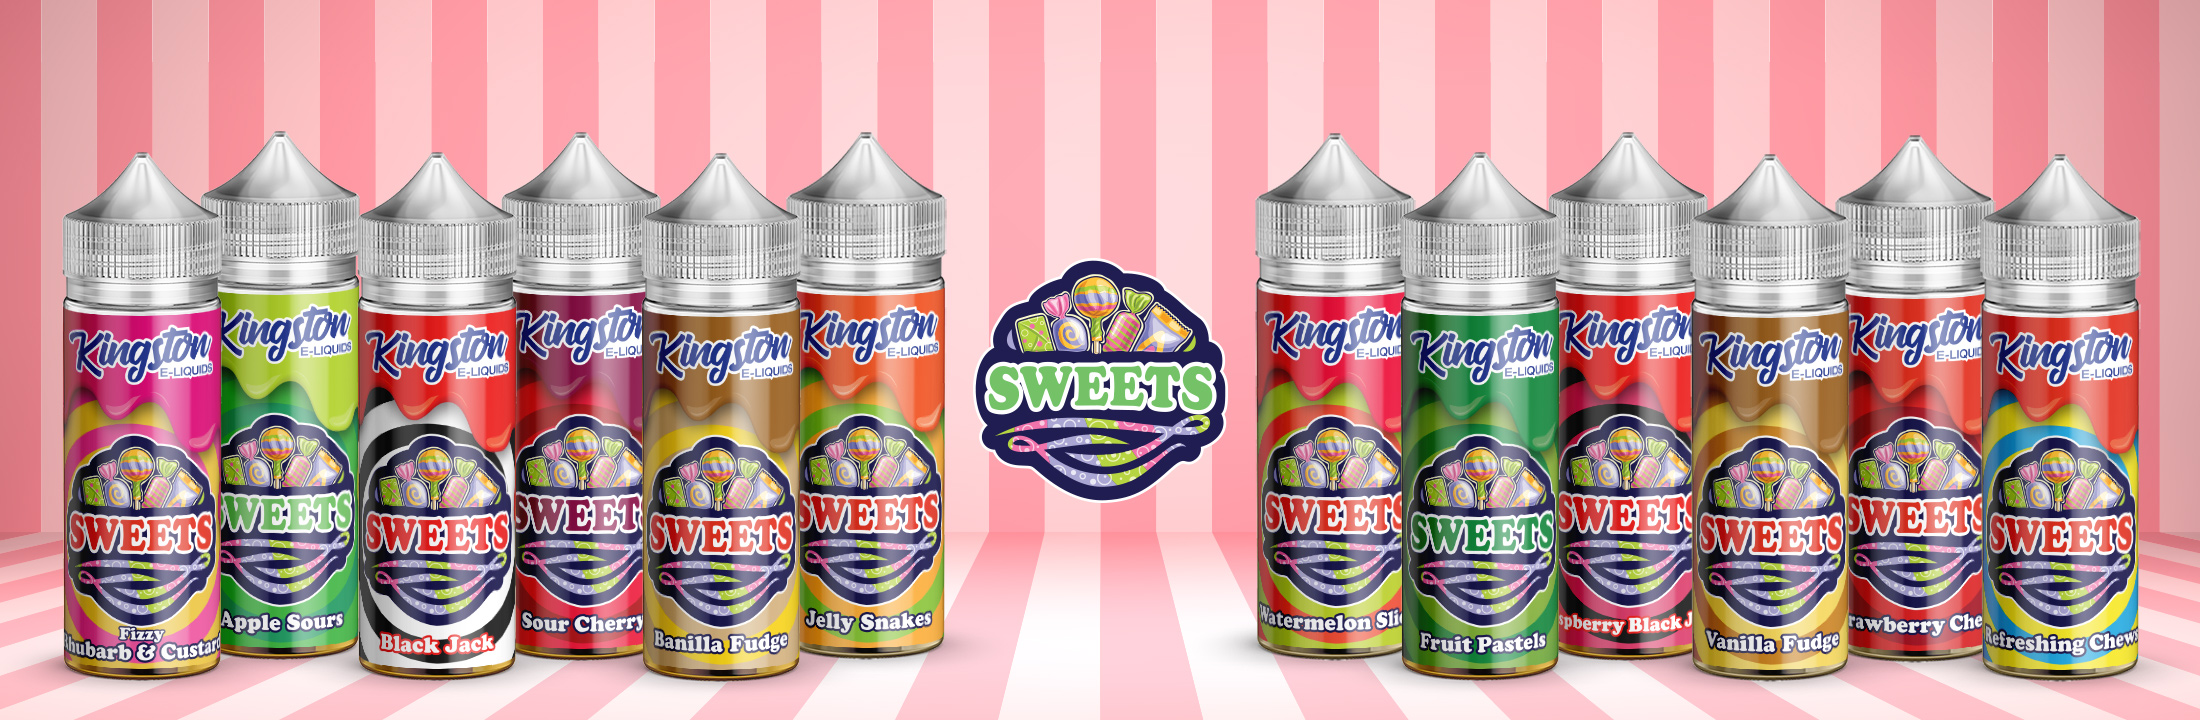 Kingston Sweets - E-liquids